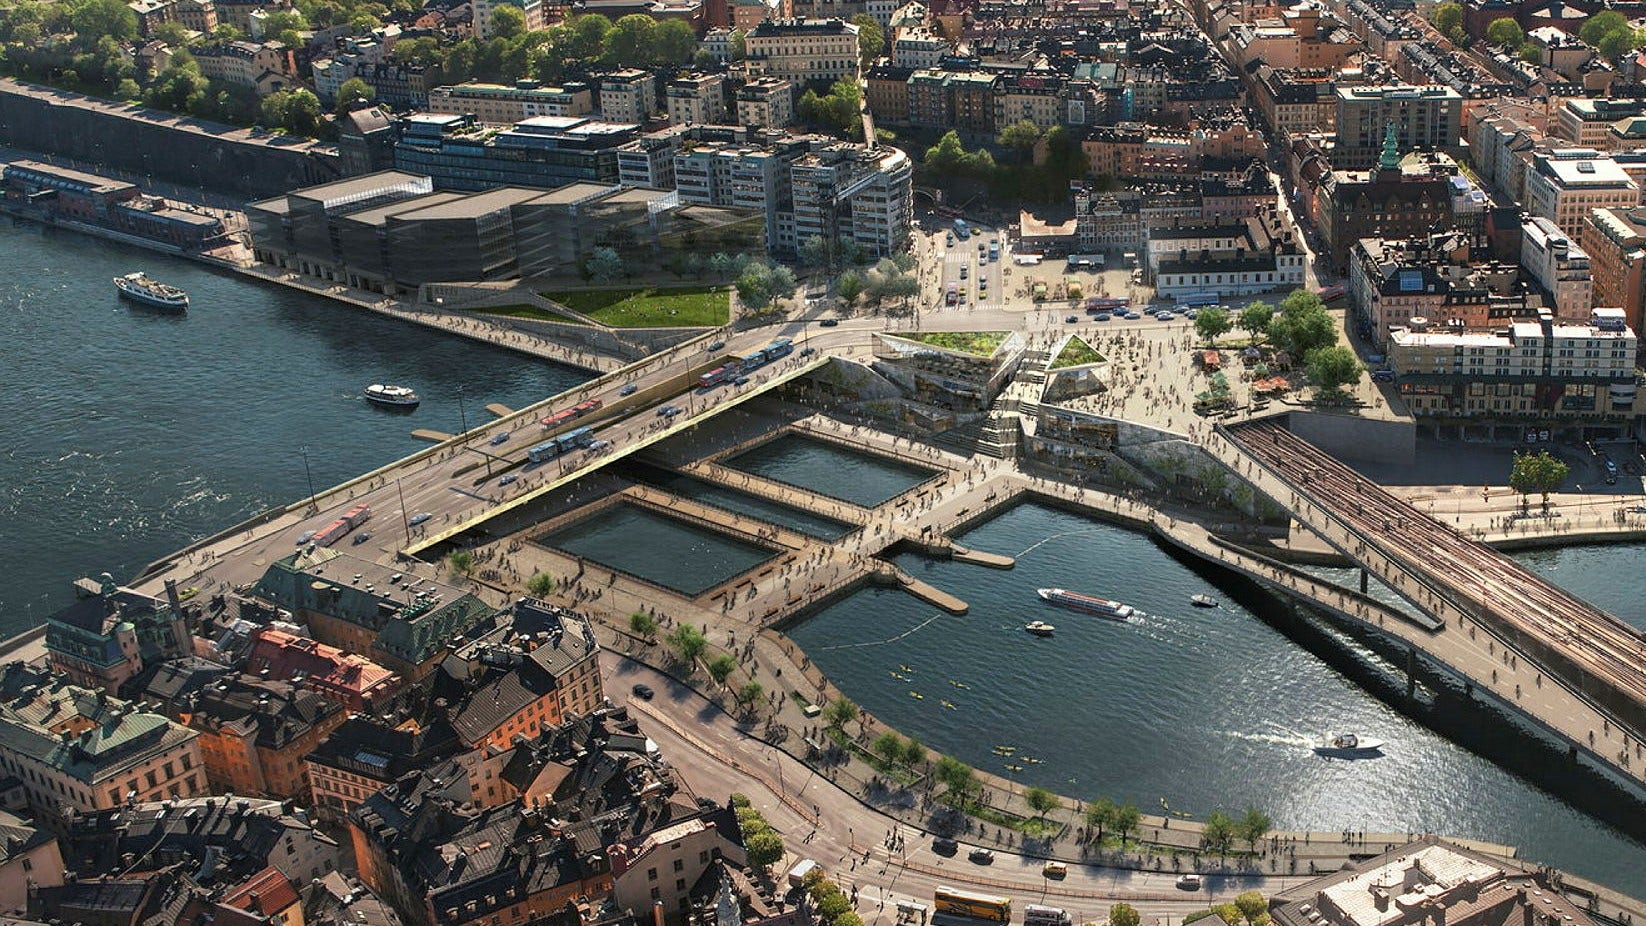 De låga broar som förbinder Södermalm med Gamla stan har kommit att kallas för Vattentorget. På bilden syns de strax under den så kallade Guldbron.